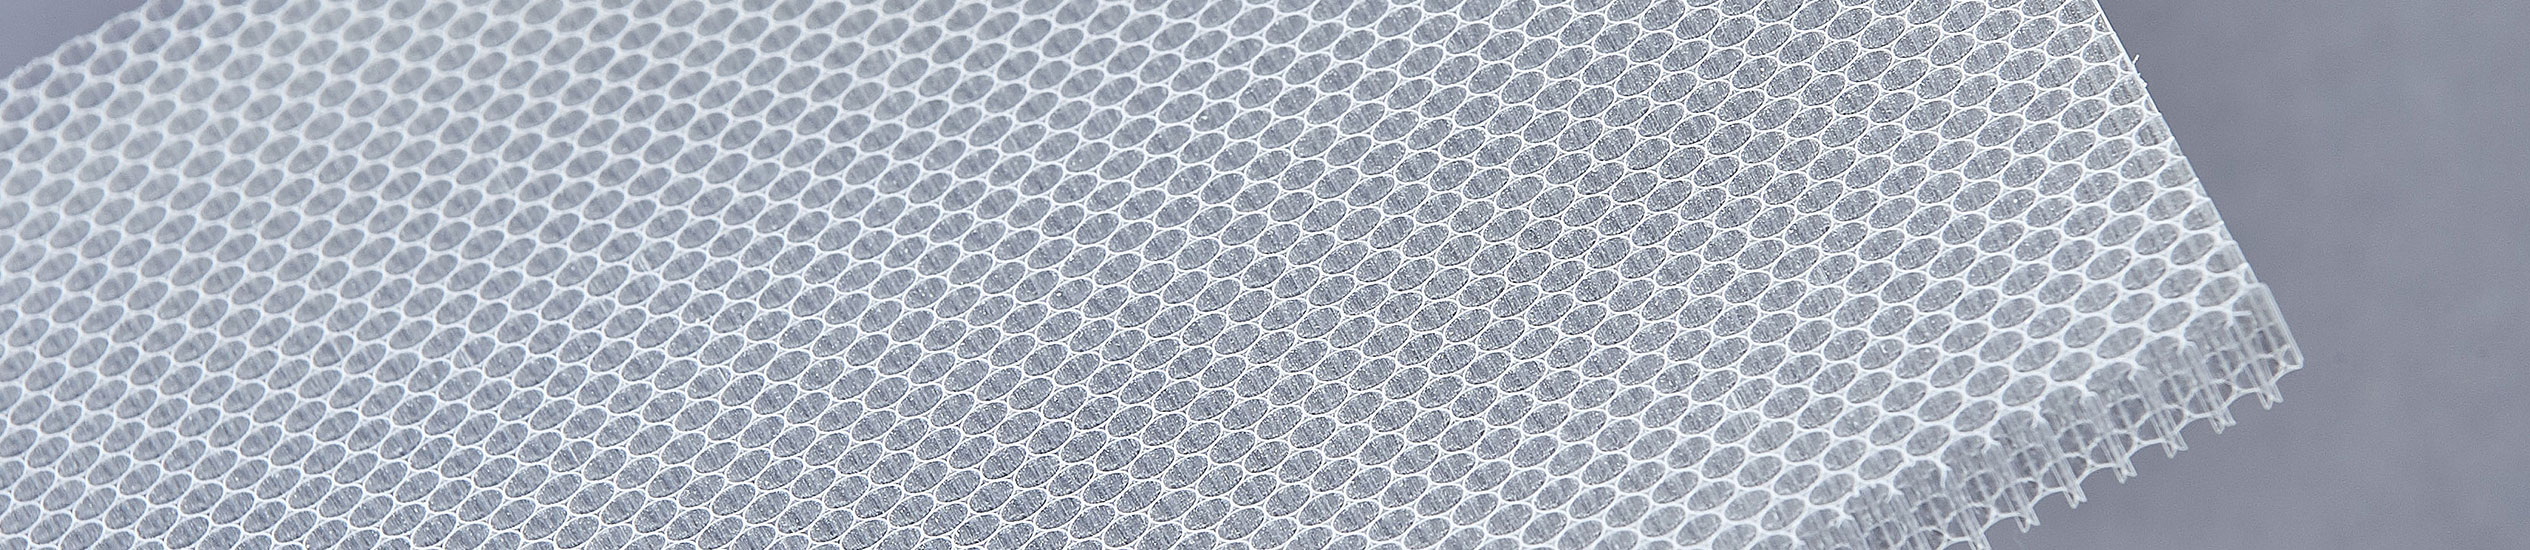 CEL ofrece una amplia gama de materiales de núcleo: panal de aluminio, termoplásticos, papel de aramida y espumas